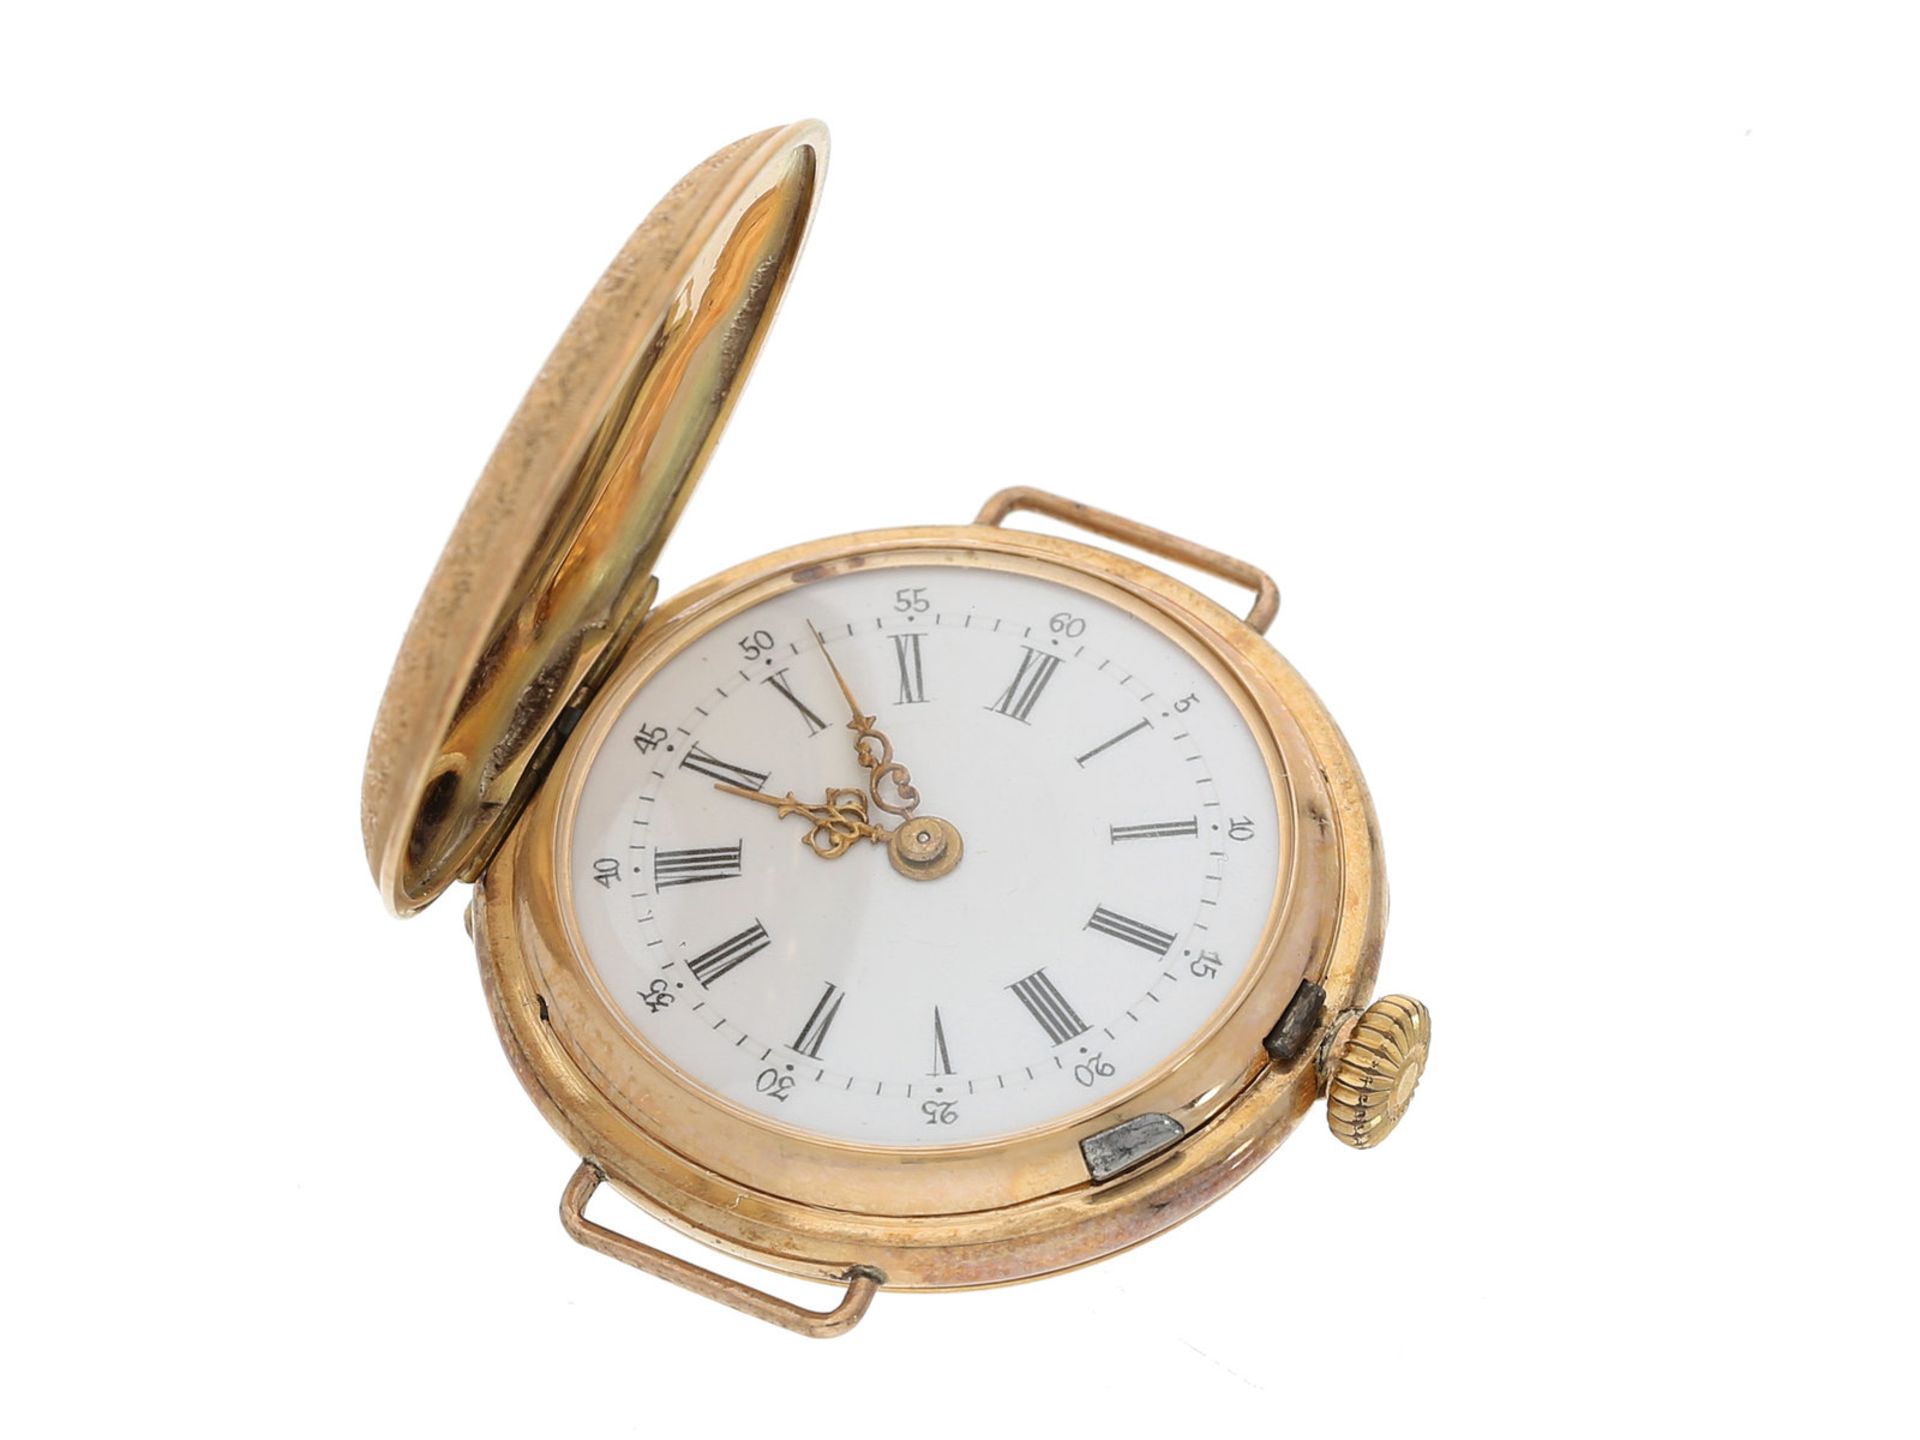 Armbanduhr: Rarität, eine der frühesten Armbanduhren mit hochwertigem Gold/Emaille-Gehäuse in der - Bild 3 aus 5